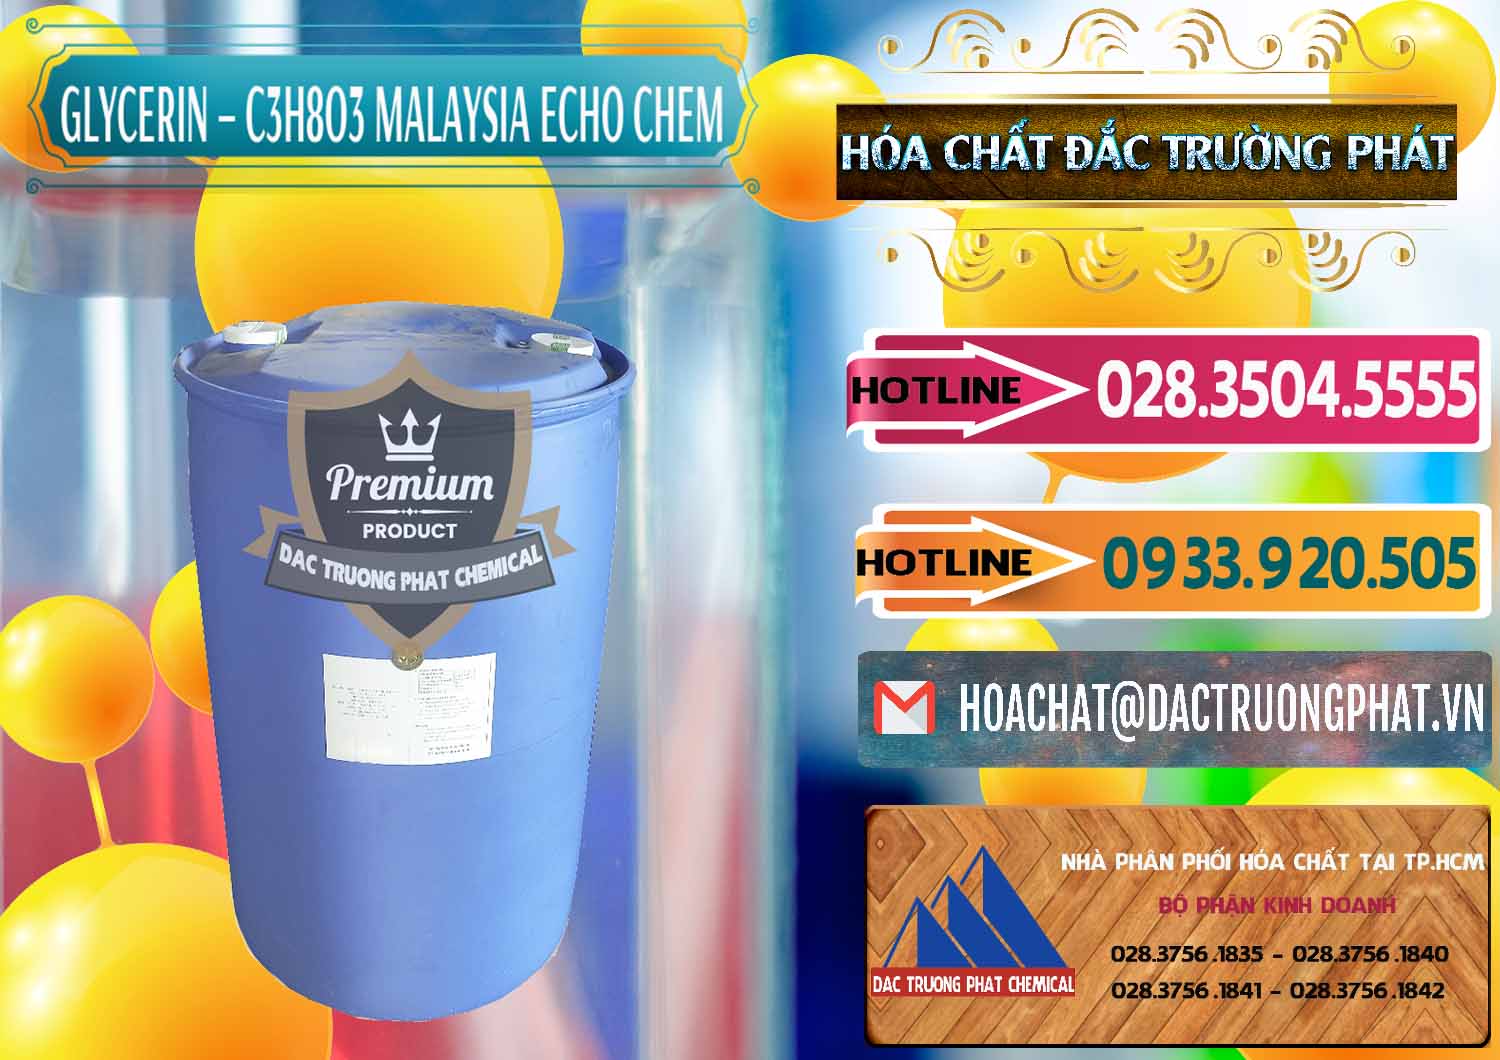 Công ty cung ứng và bán Glycerin – C3H8O3 99.7% Echo Chem Malaysia - 0273 - Công ty chuyên cung cấp _ kinh doanh hóa chất tại TP.HCM - dactruongphat.vn